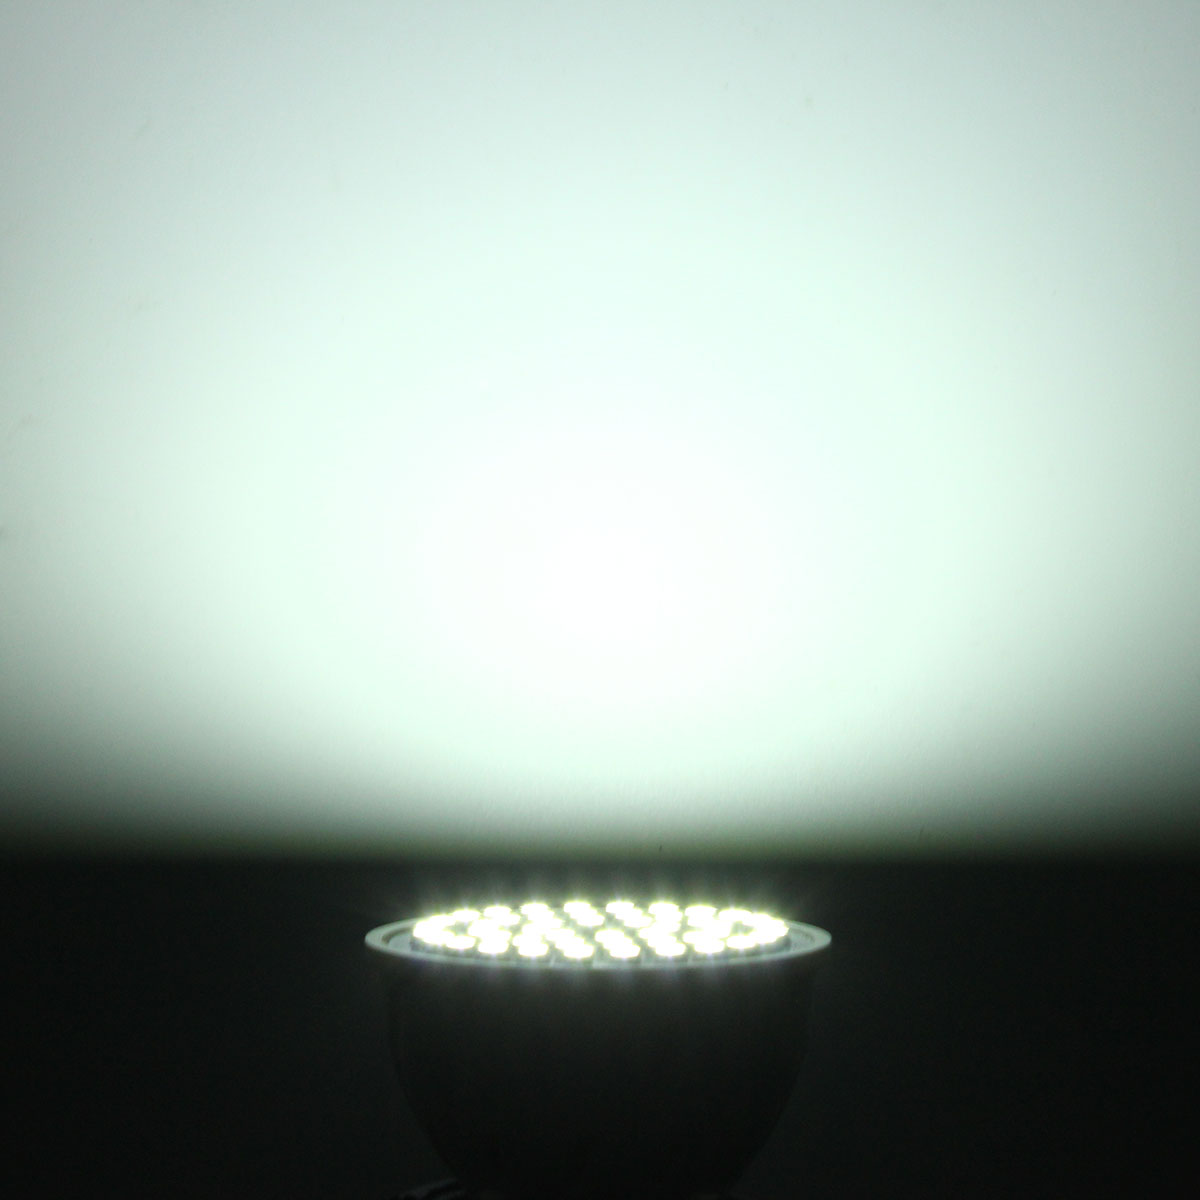 ZX-E27-E14-GU10-MR16-LED-4W-48-SMD-3528-LED-Pure-White-Warm-White-Spot-Lightt-Lamp-Bulb-AC110V-AC220-1076565-2